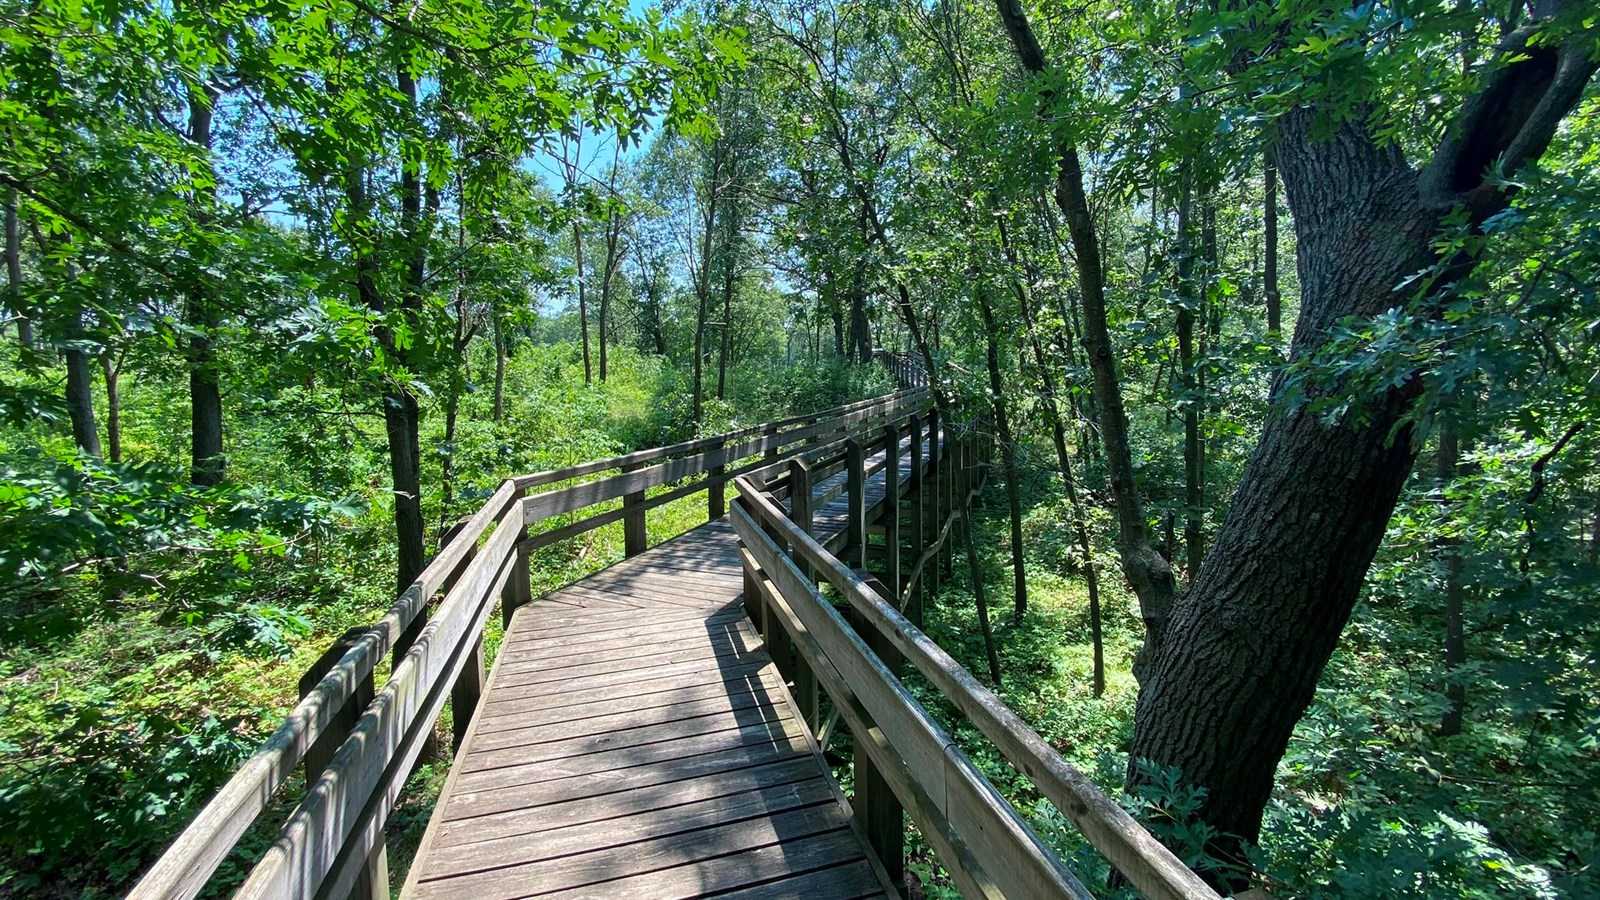 An elevated wooden boardwalk zigs through an open woodland.